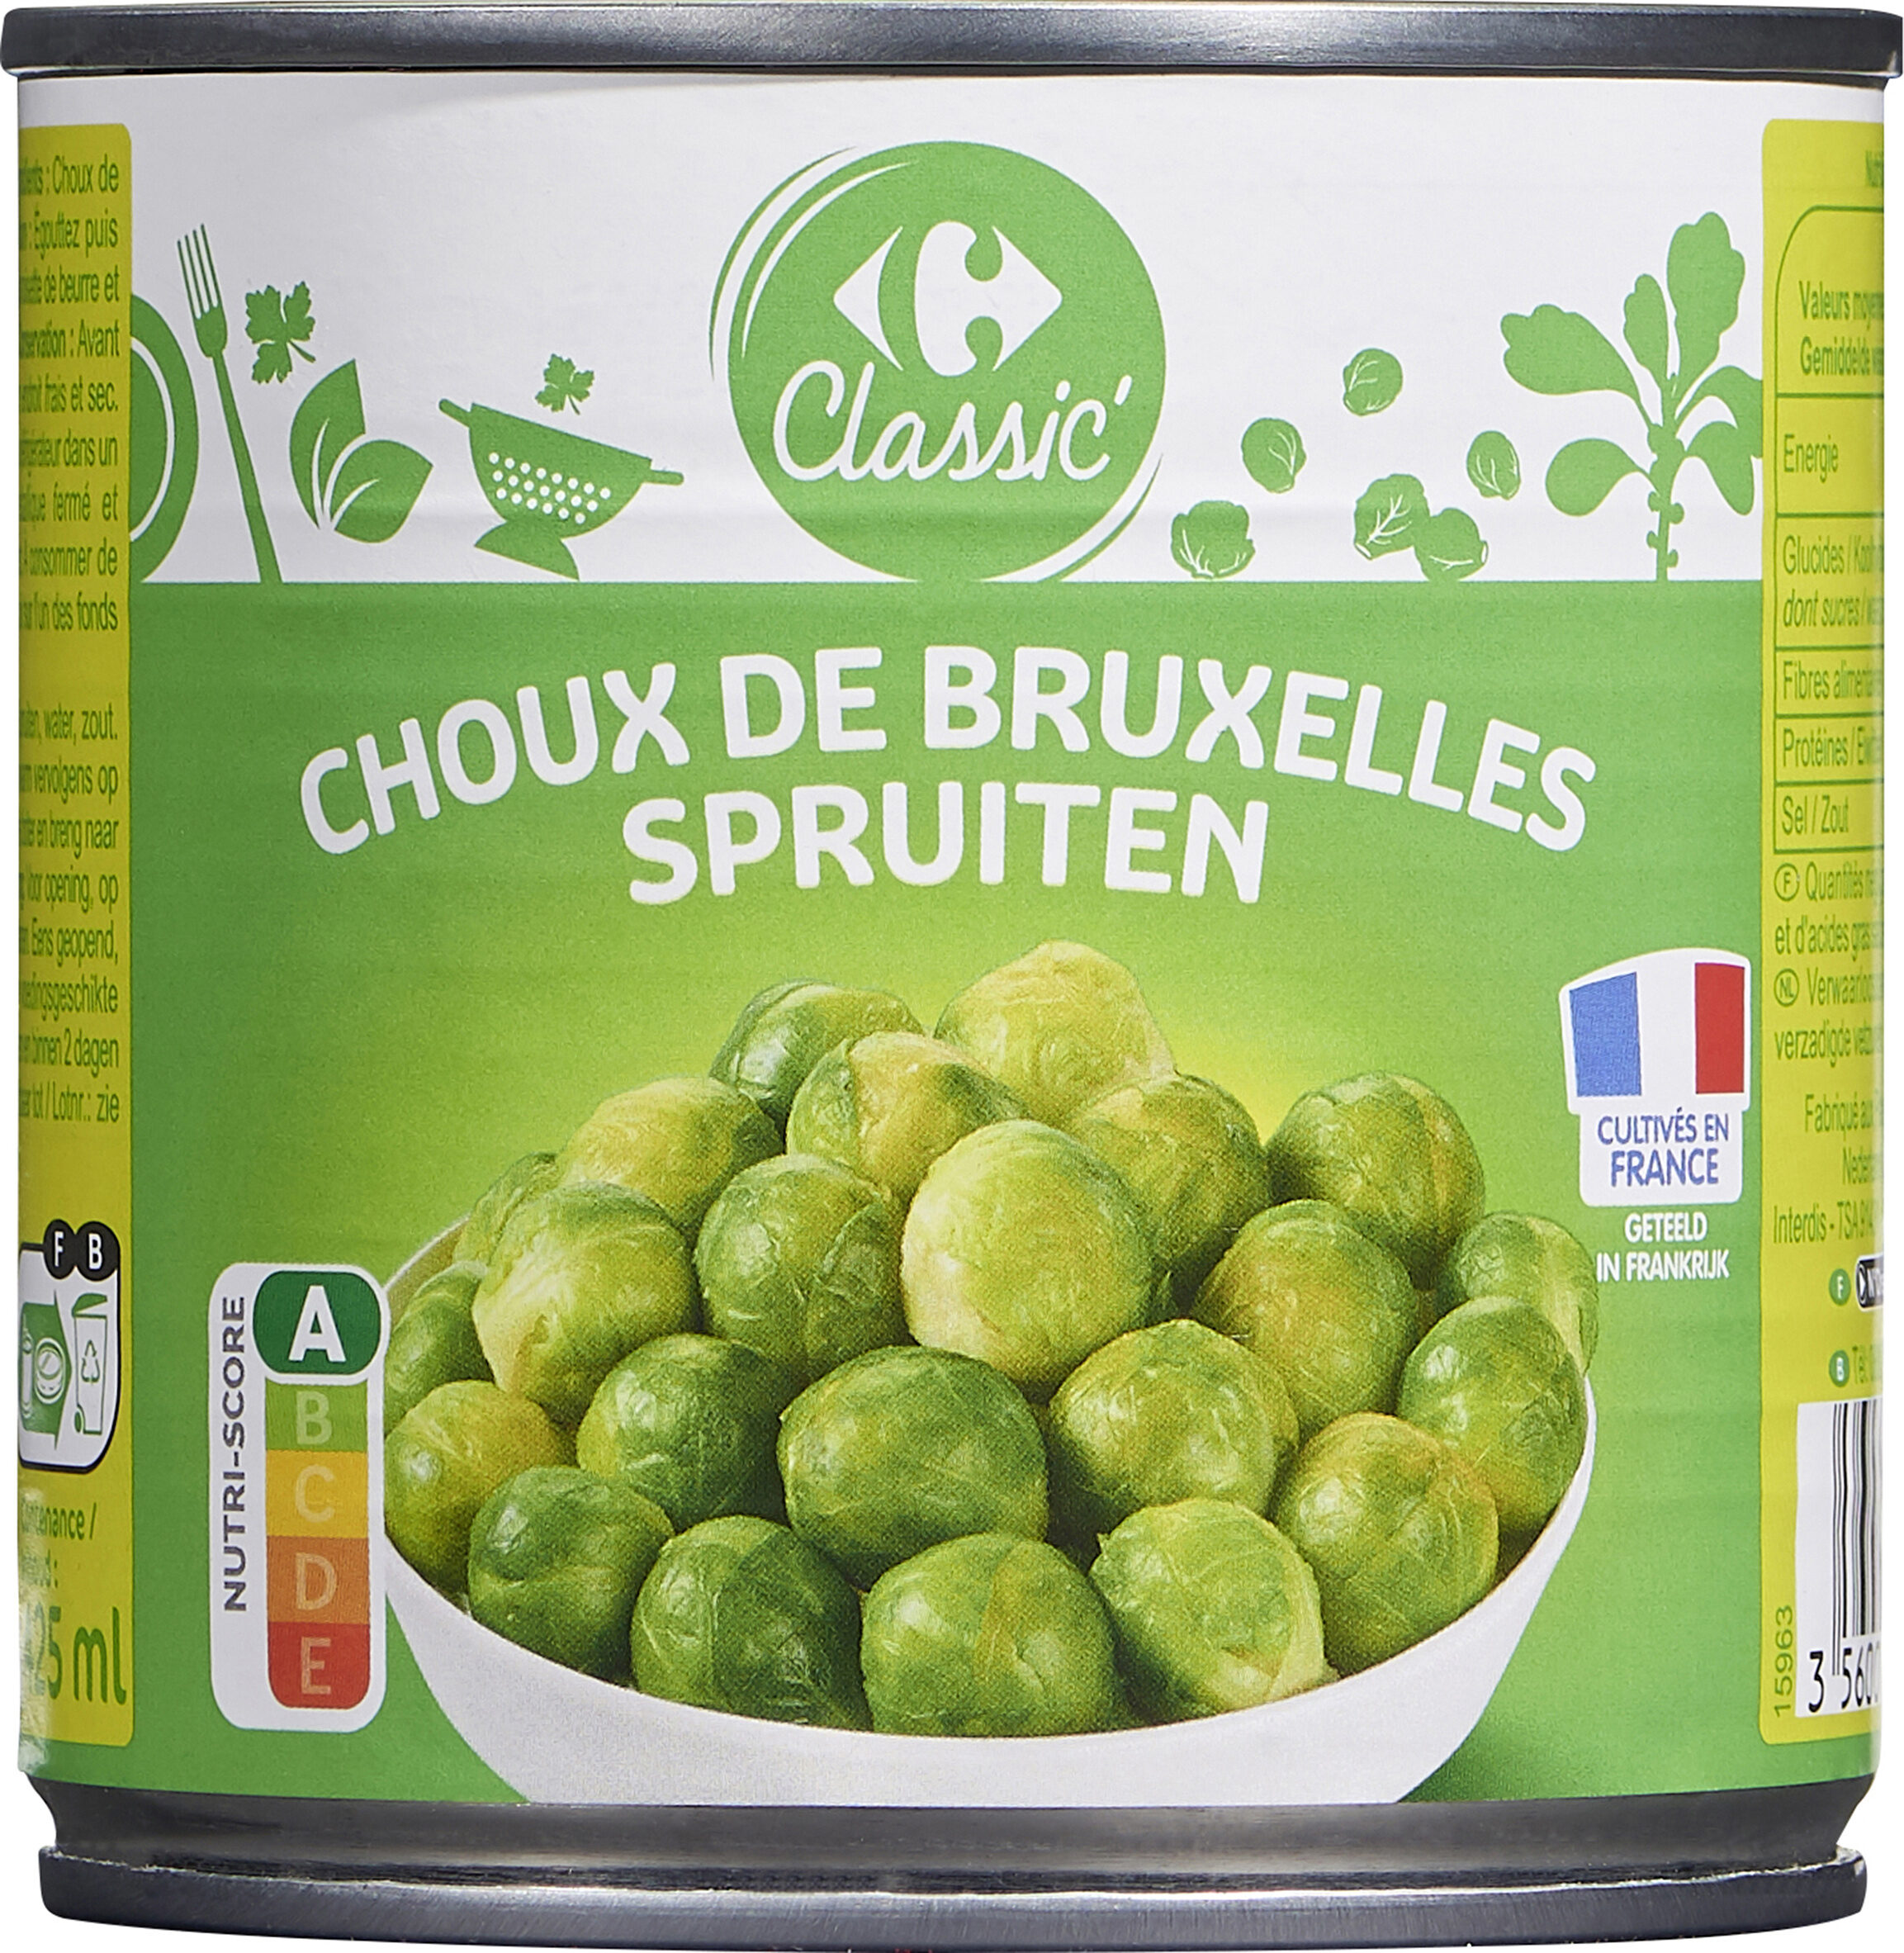 Choux de Bruxelles - Produkt - fr